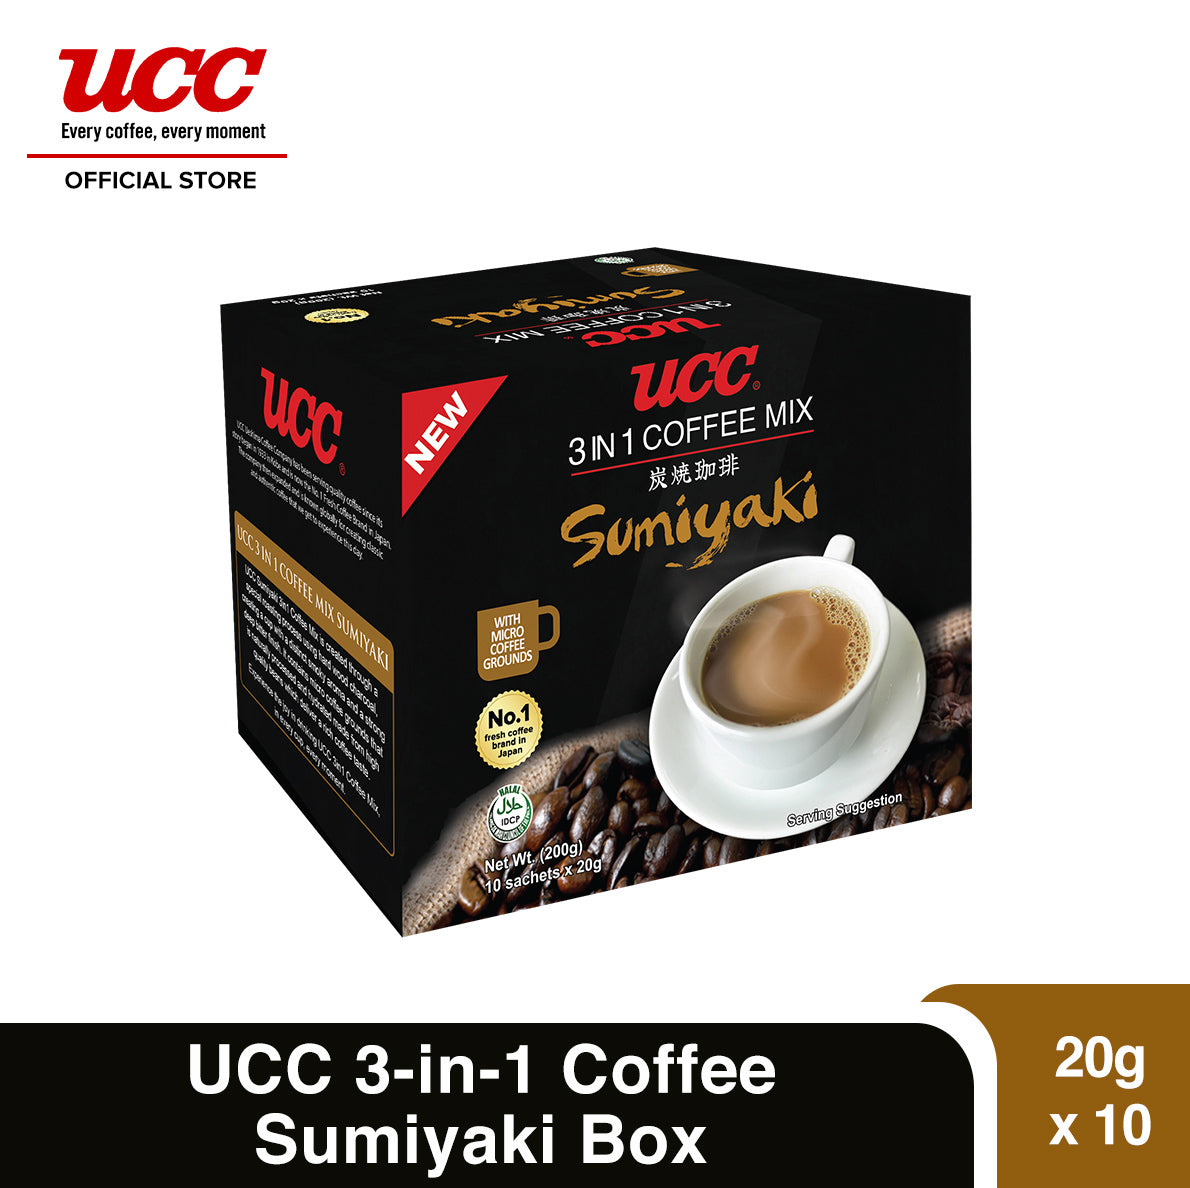 UCC 3-in-1 Sumiyaki Coffee Box (20g x 10)